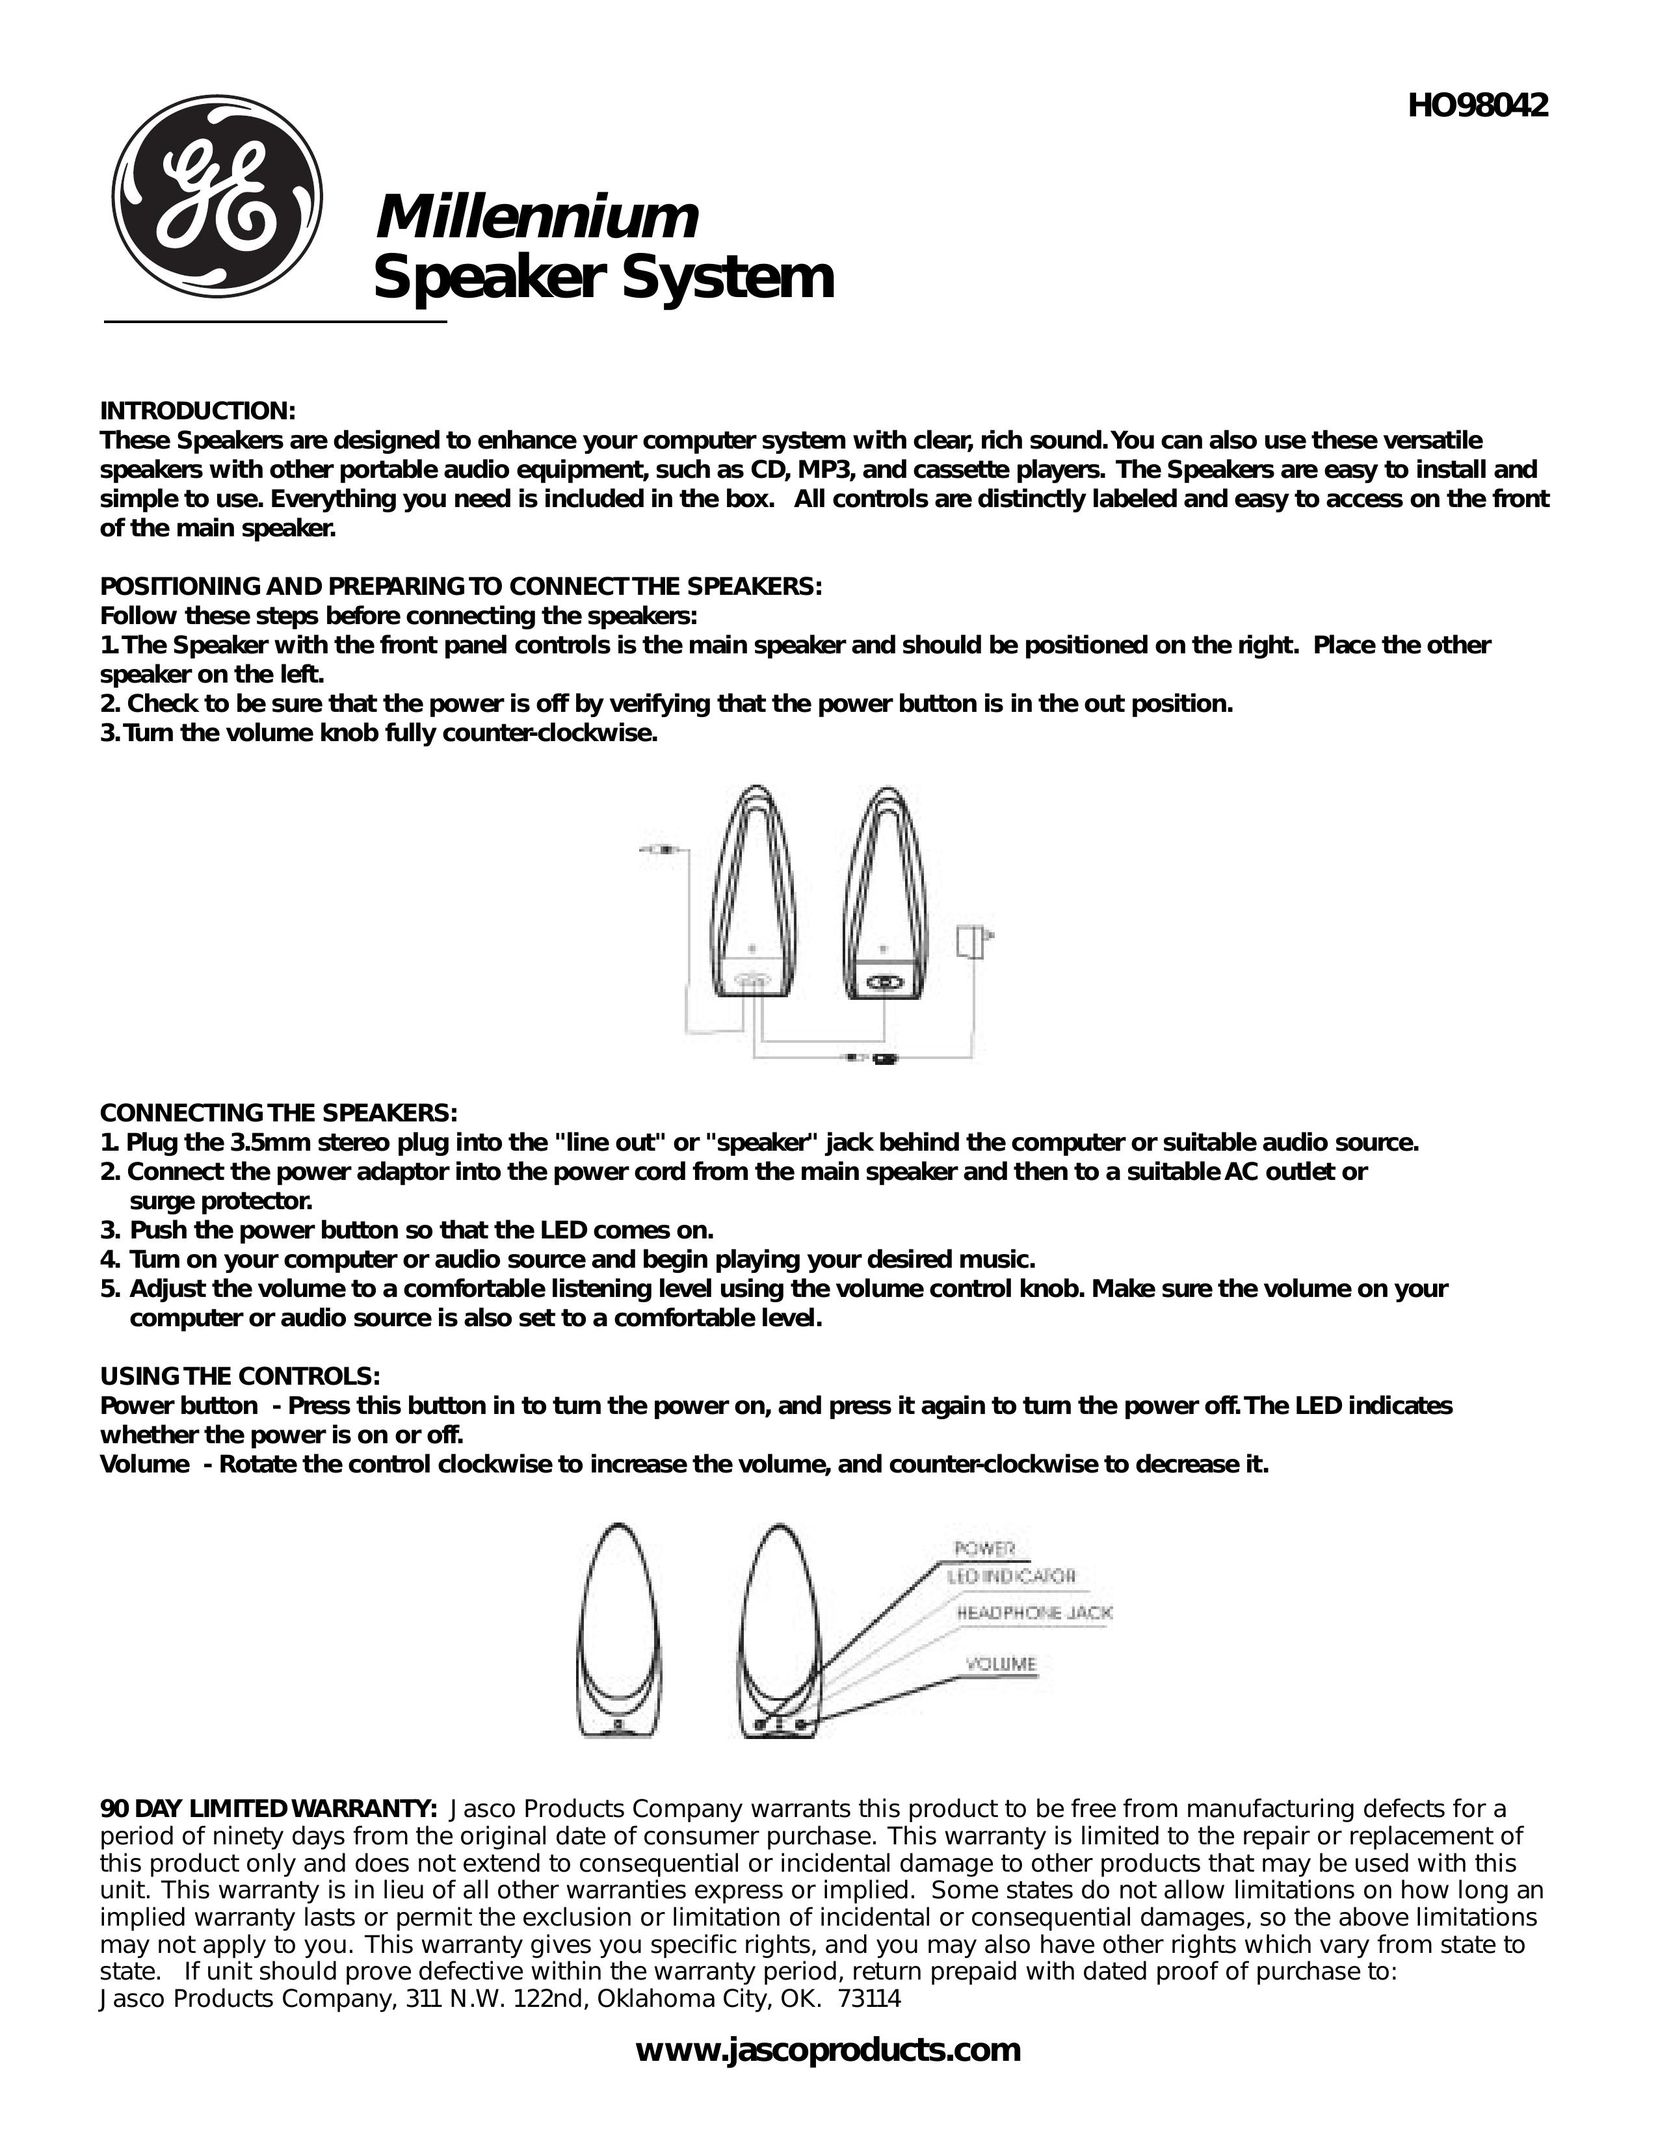 GE HO98042 Speaker User Manual